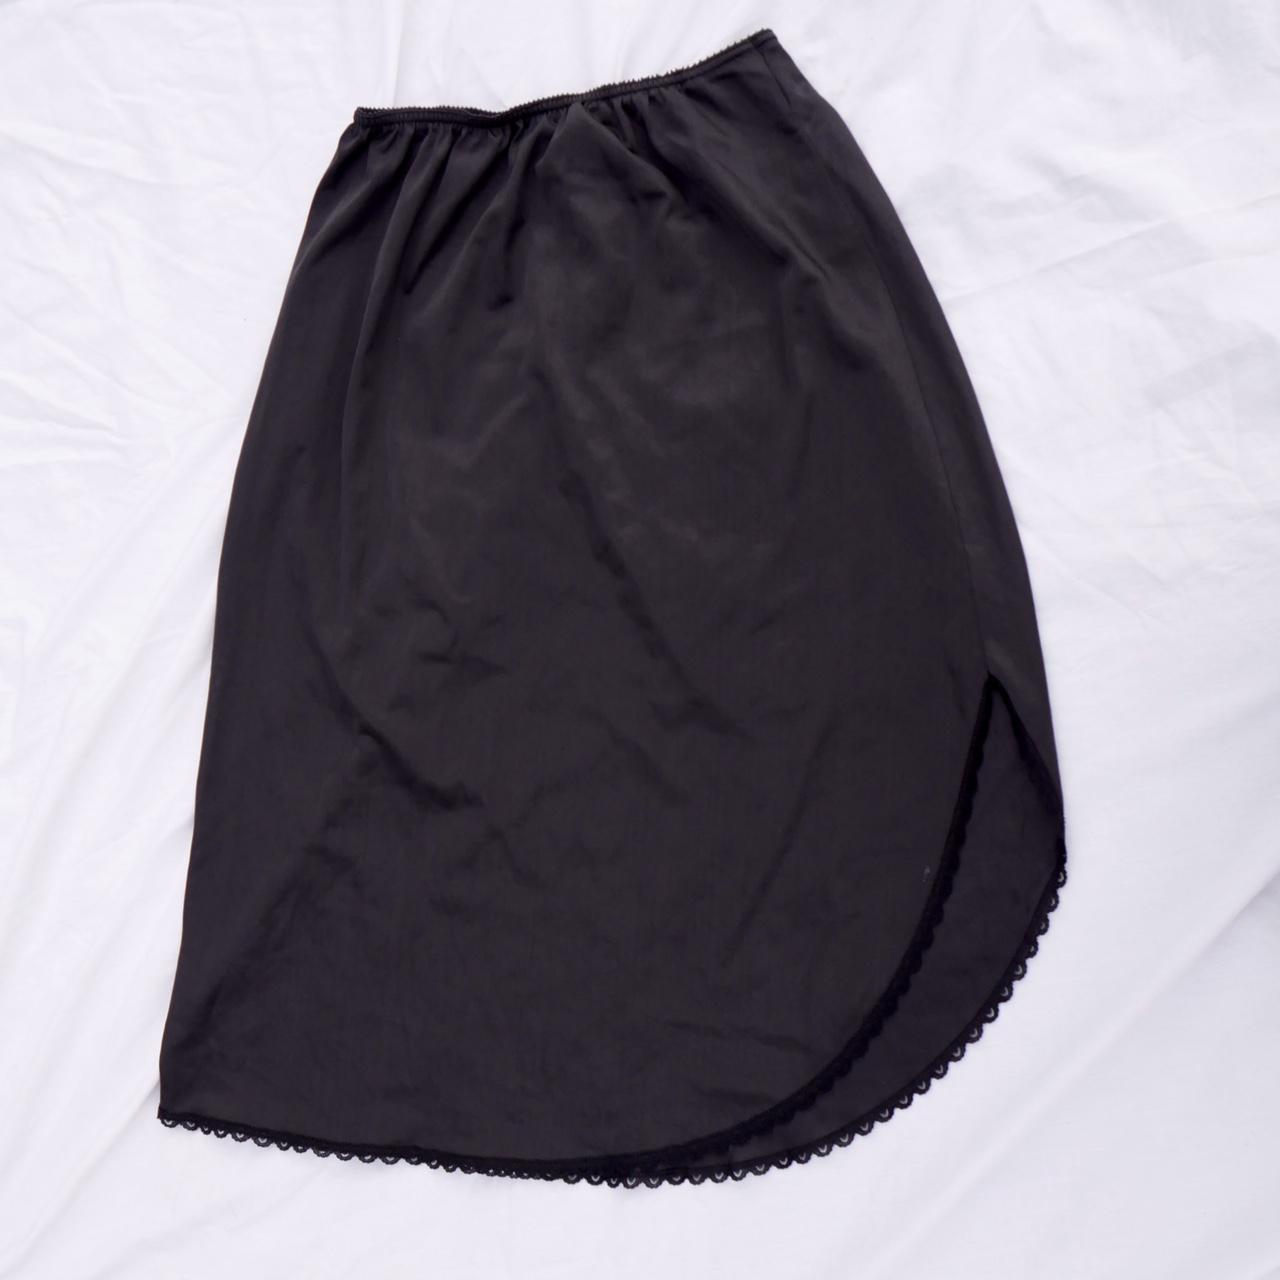 Sears Women's Black Skirt